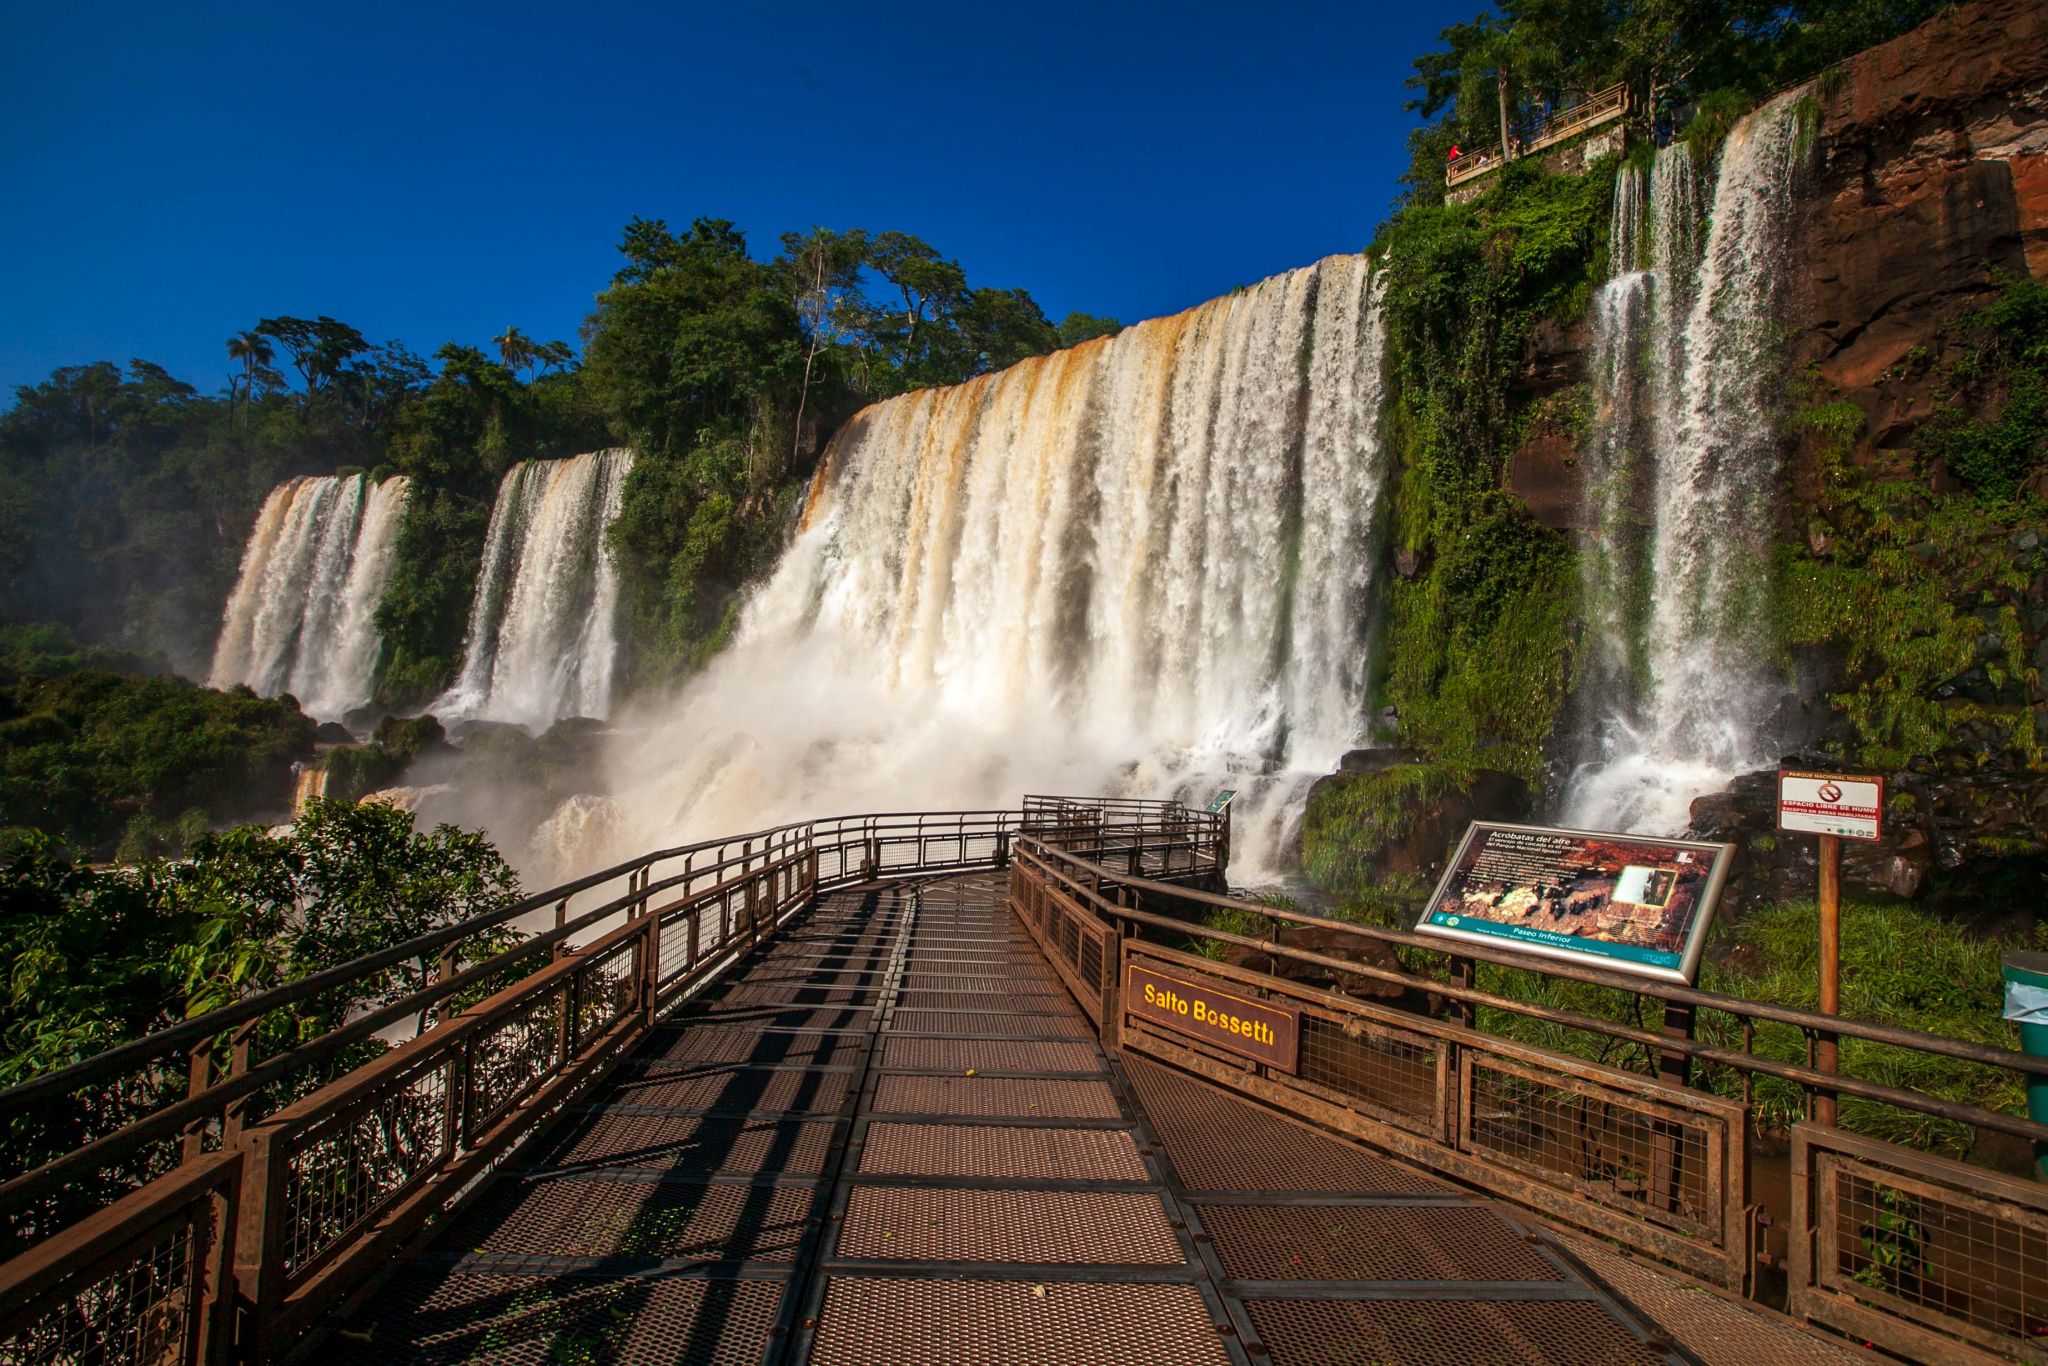 Cataratas del Iguazú | Buscan intensamente a un turista que cayó en las pasarelas del Salto Bosetti - Canal Doce Misiones